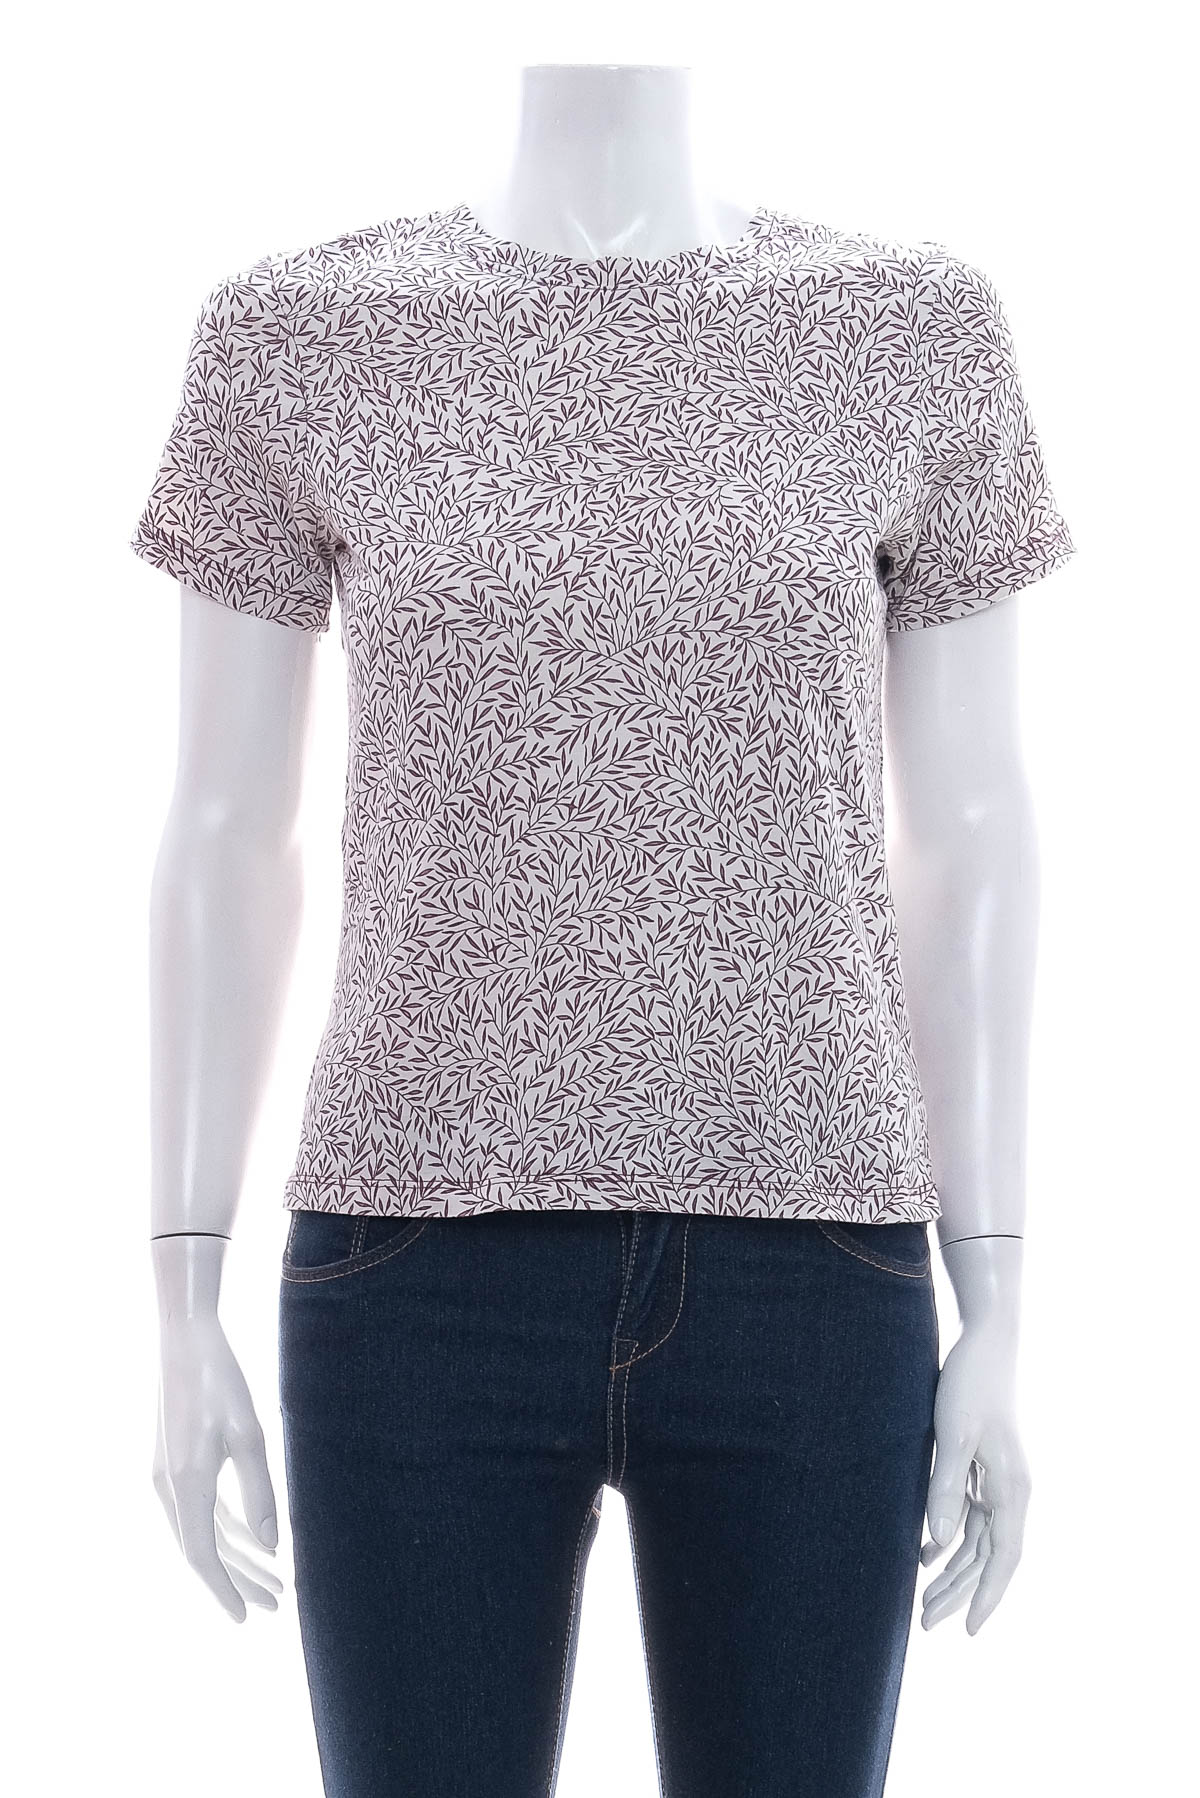 Γυναικεία μπλούζα - MORRIS & Co x H&M - 0